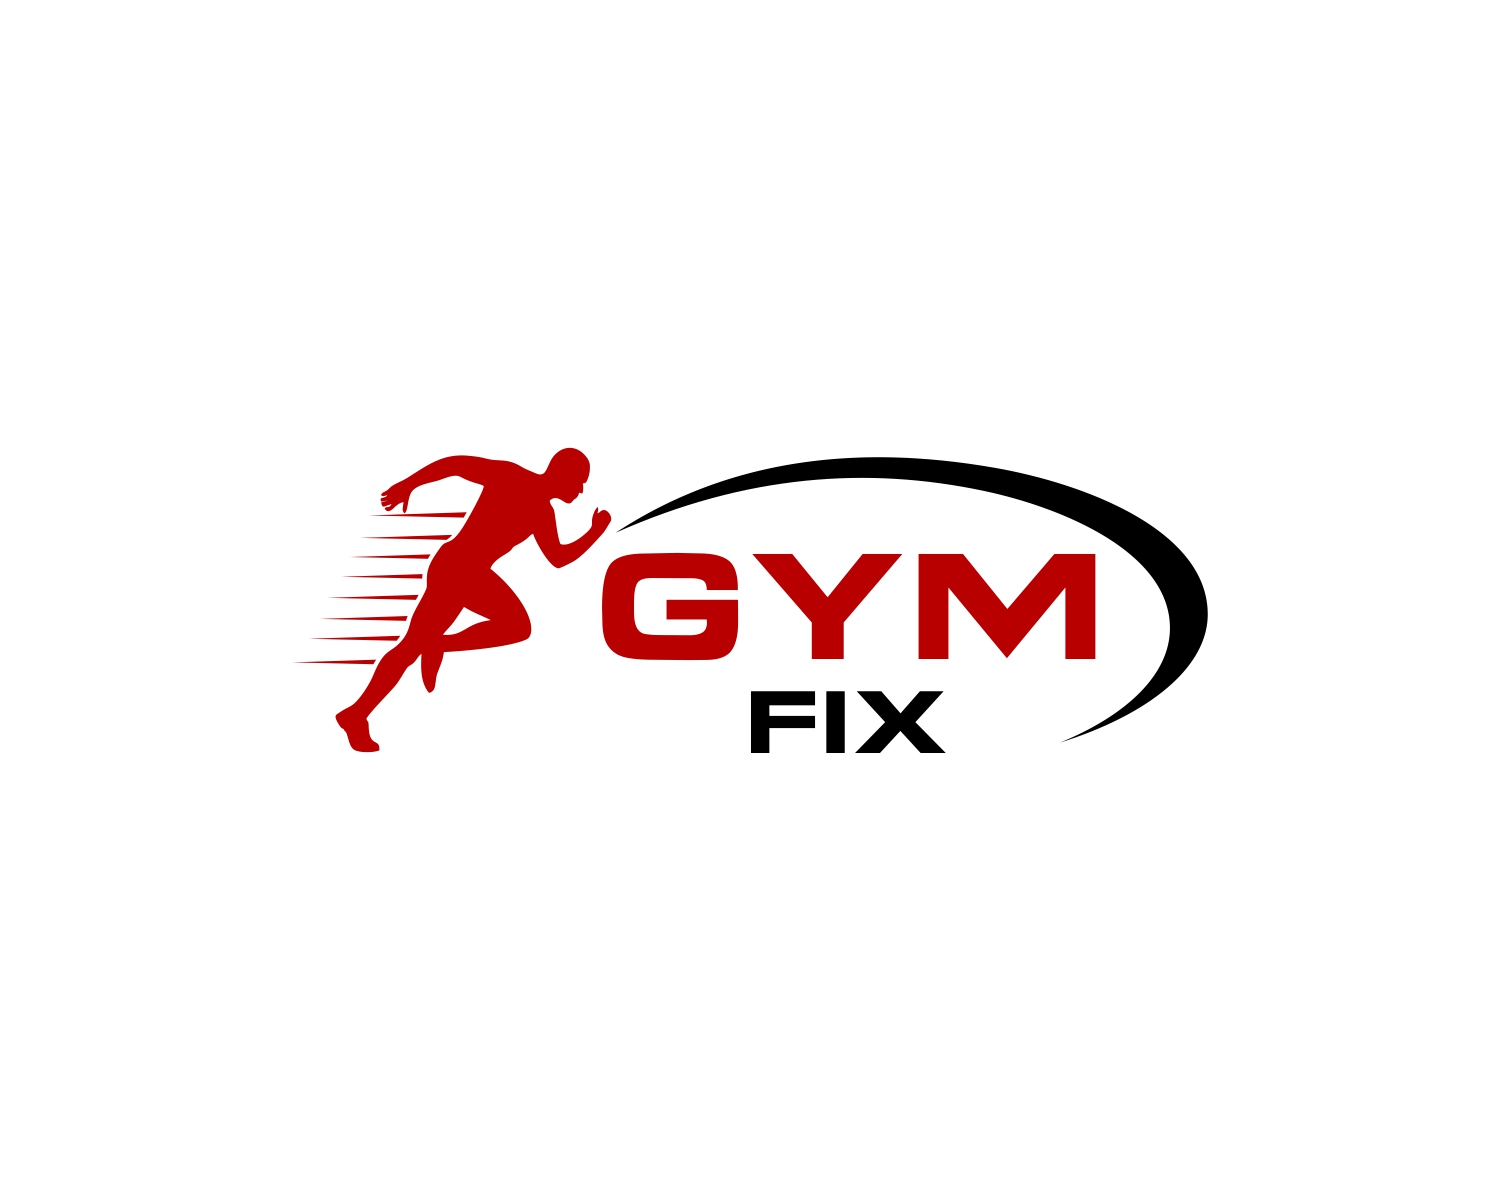 Help flex fitness with a new logo, Logo design contest